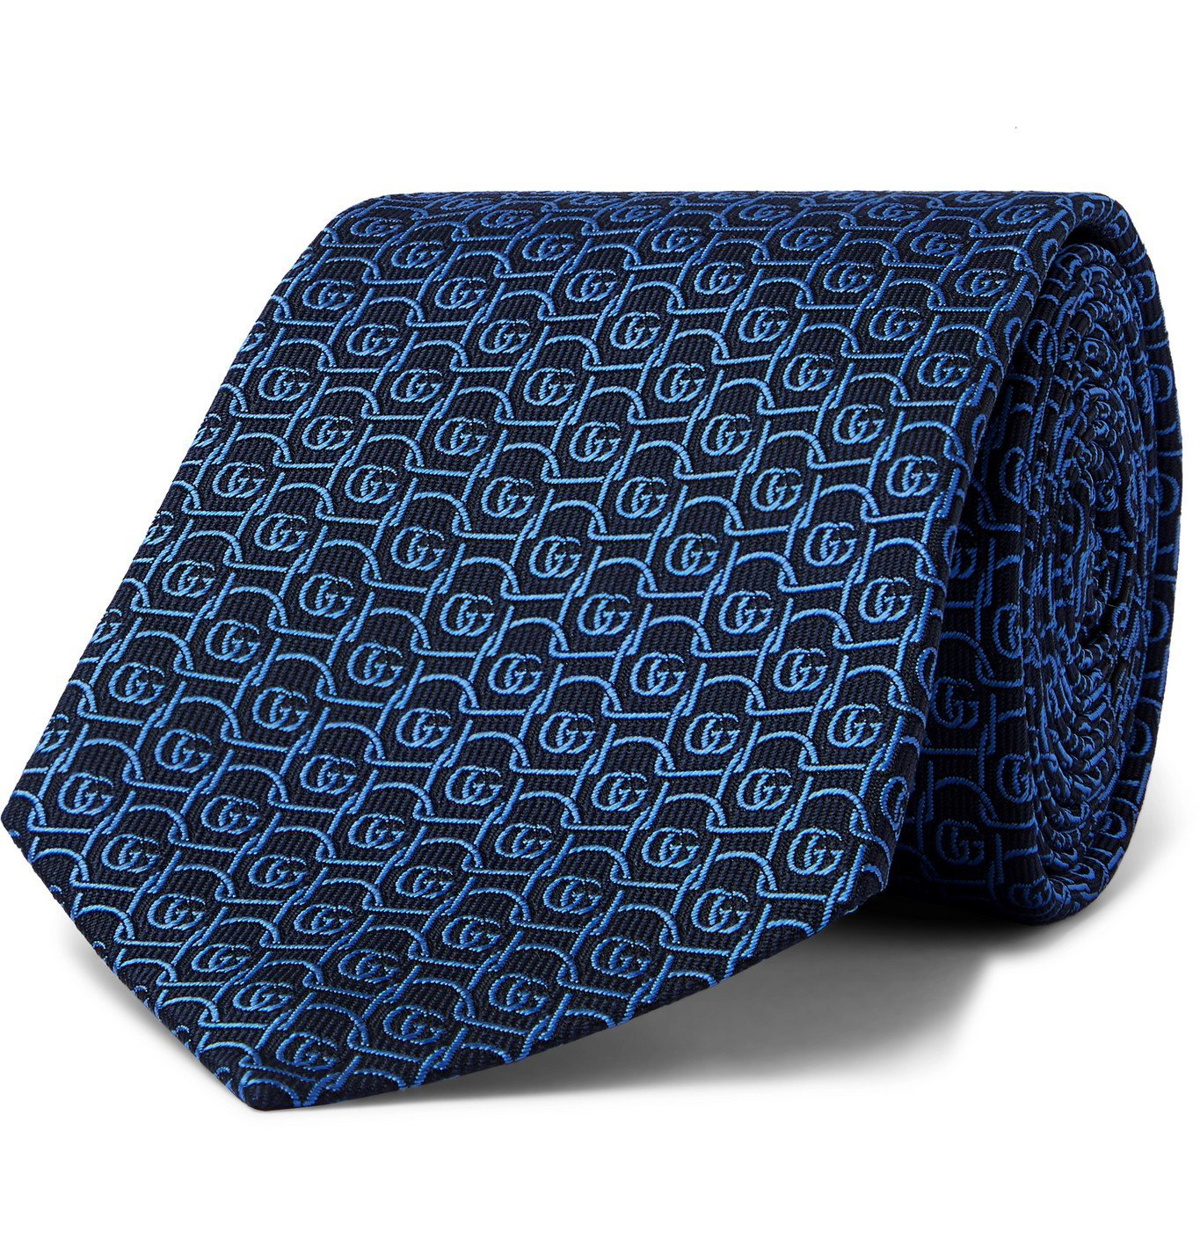 GG Jacquard Silk Tie in Blue - Gucci